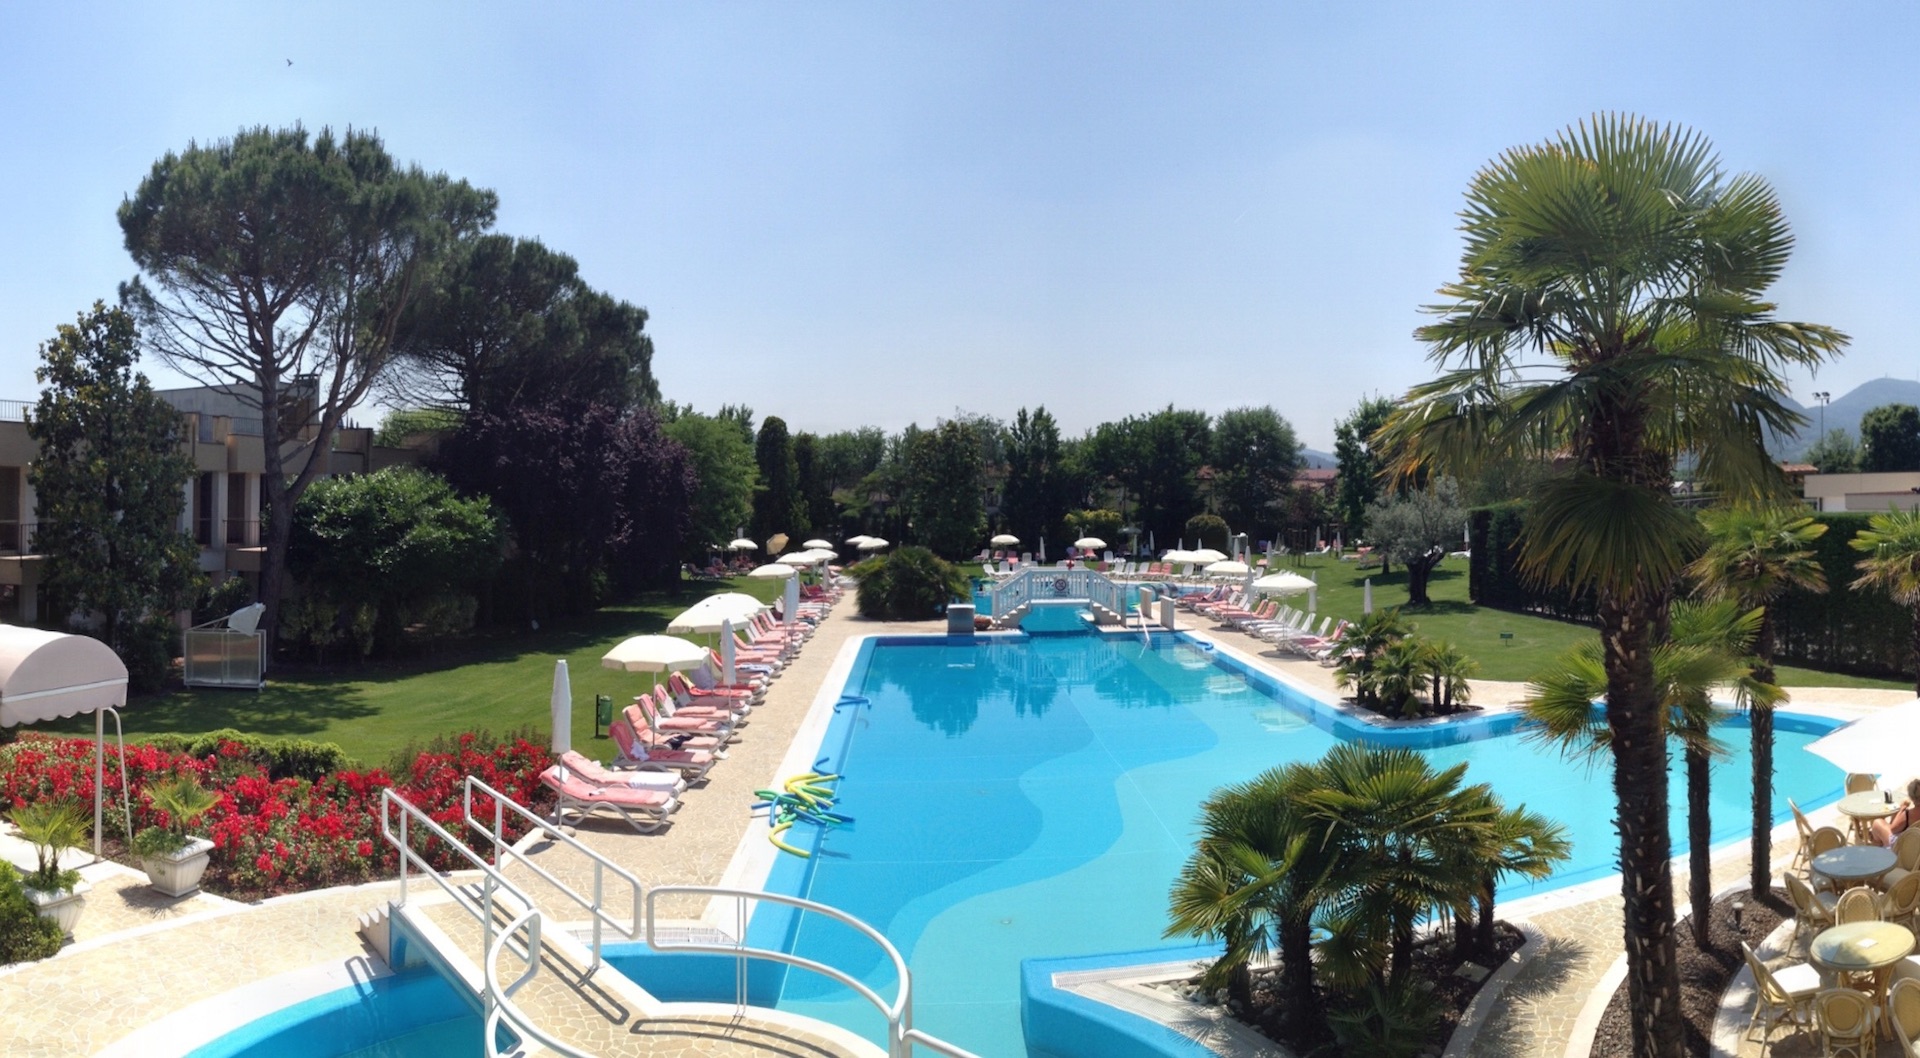 All’Ermitage Bel Air – Medical Hotel di Abano Terme per superare i momenti difficili e riscoprire il piacere di vivere, in salute e in totale sicurezza